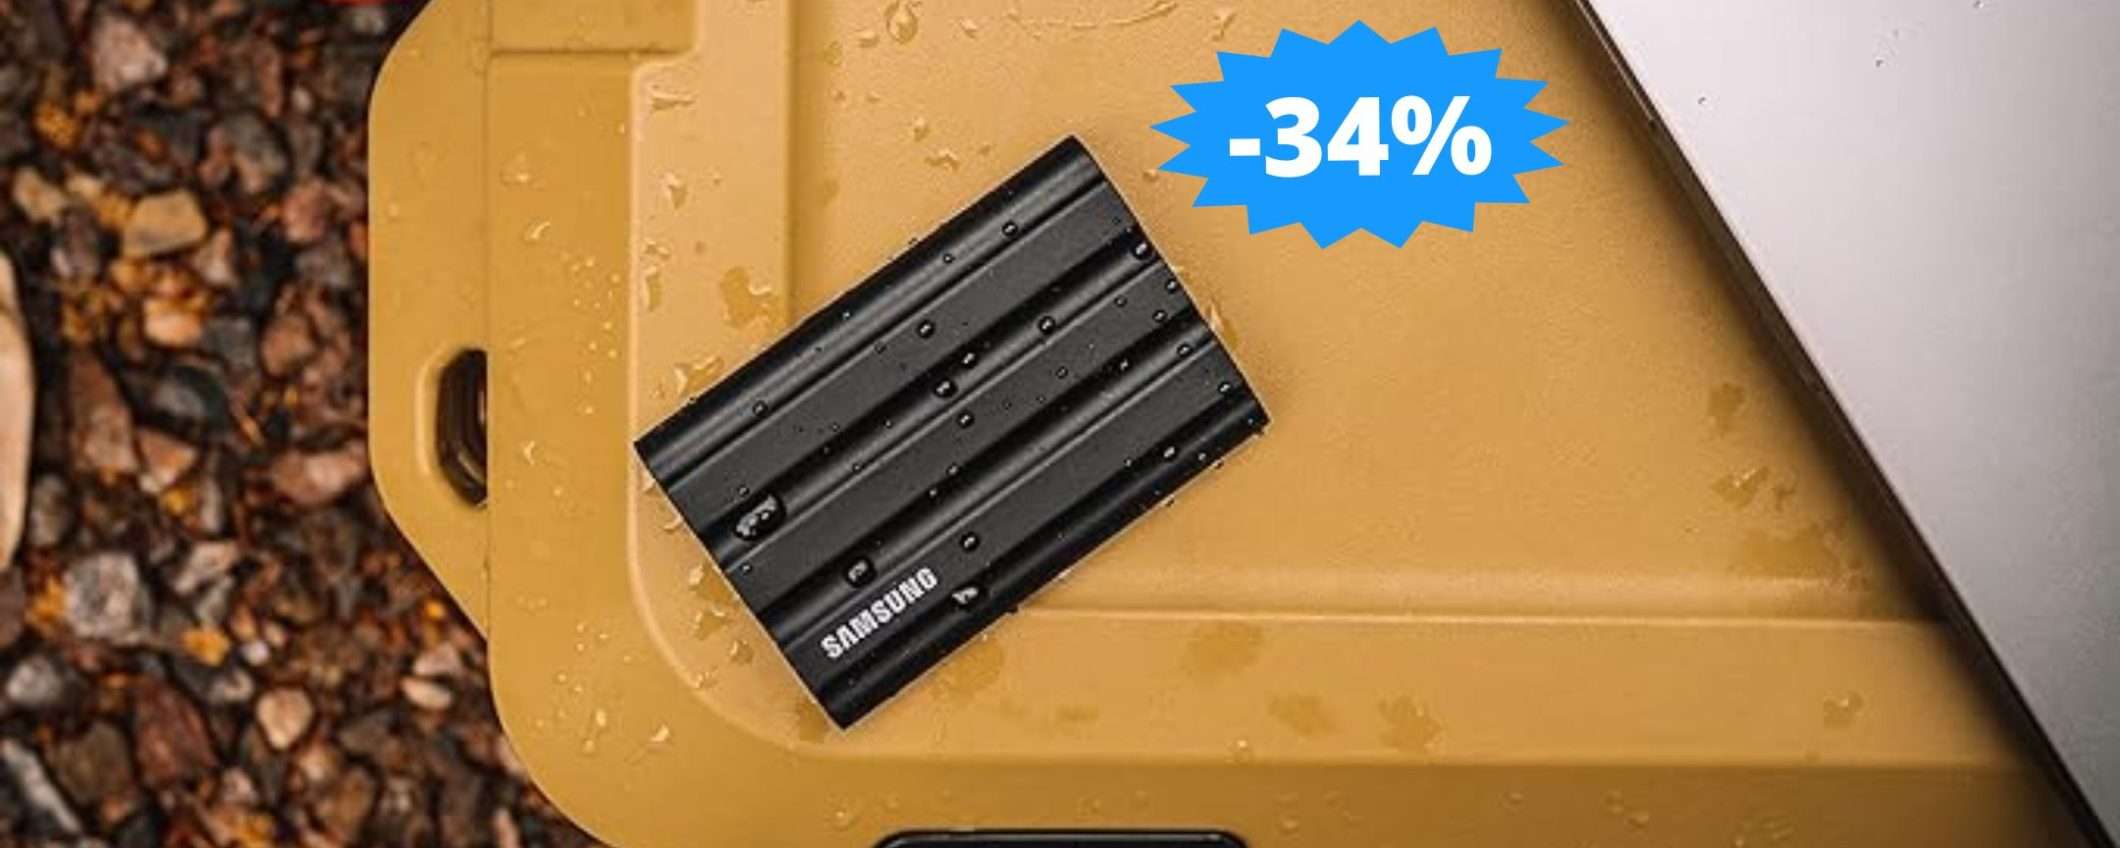 SSD Samsung Memorie T7 Shield: MEGA sconto del 34%